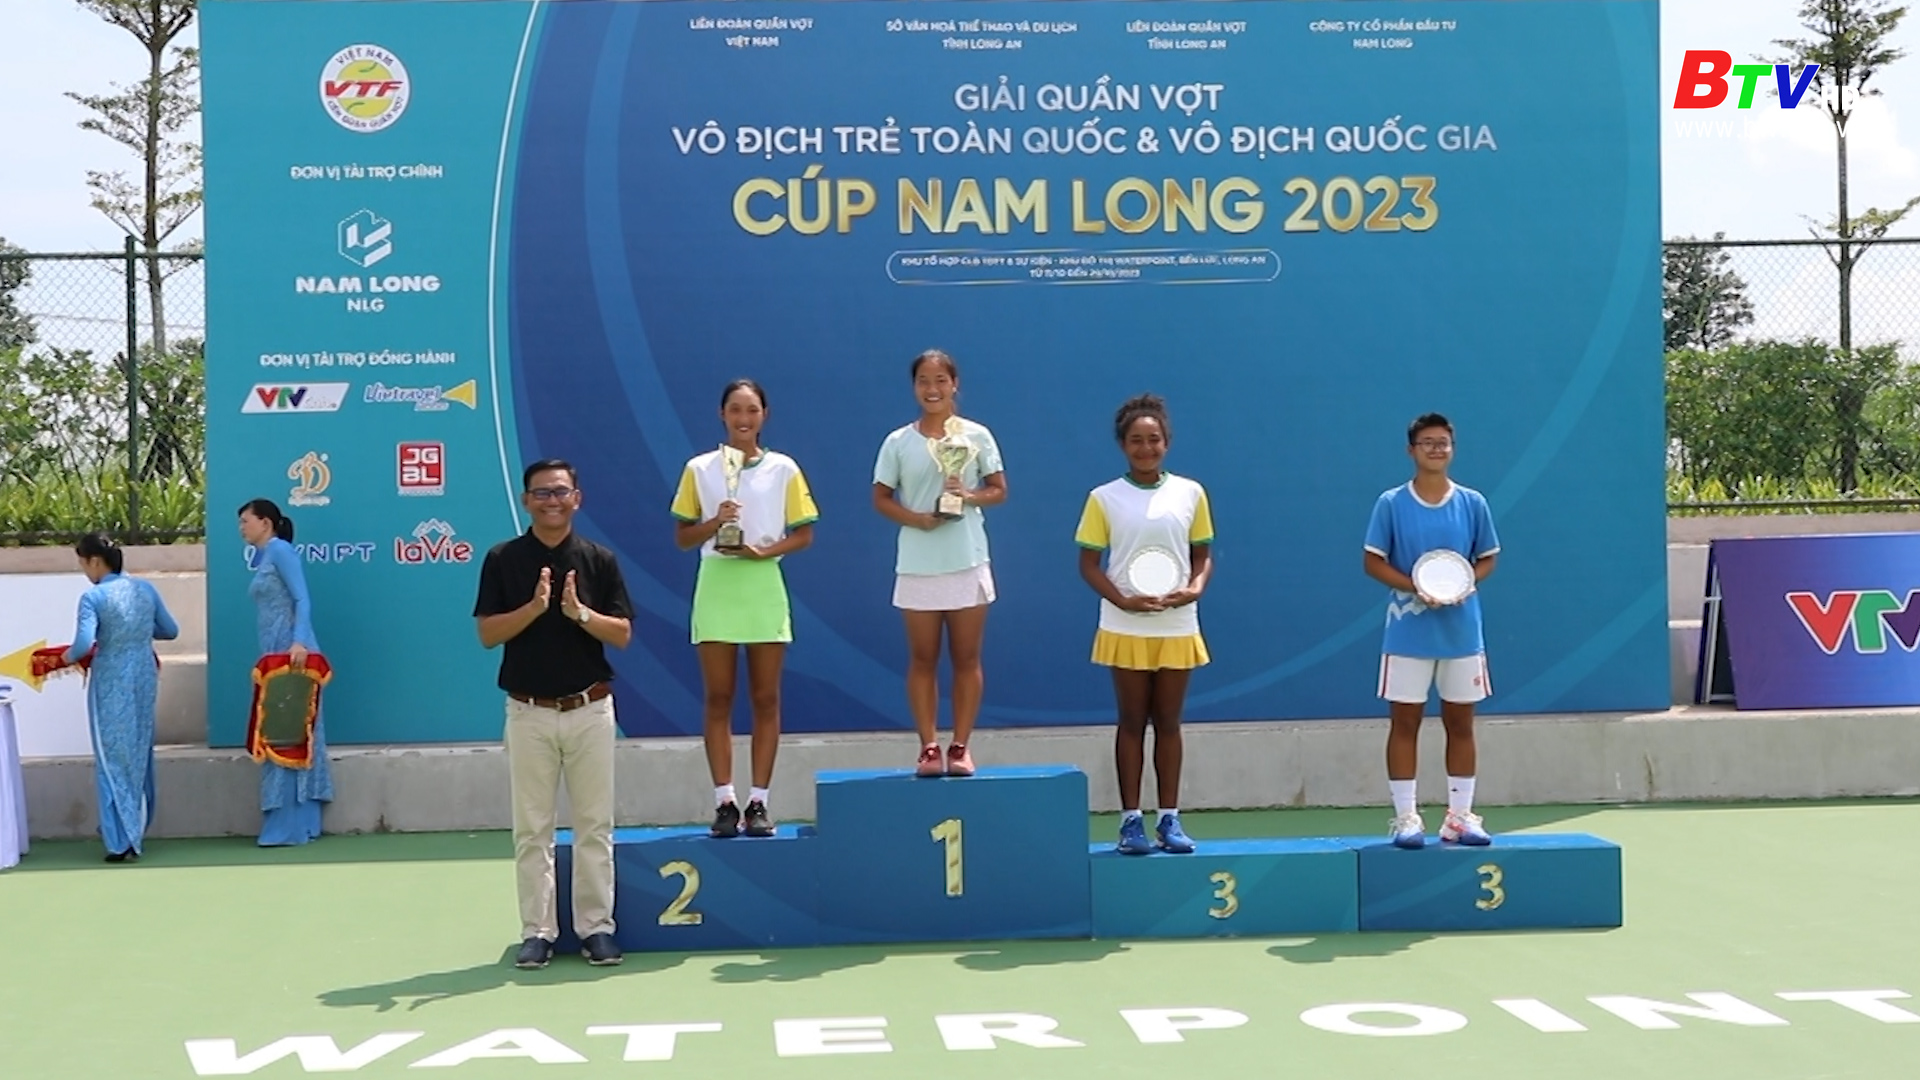 Giải quần vợt vô địch trẻ toàn quốc cúp Nam Long 2023, Bình Dương đạt thành tích ấn tượng